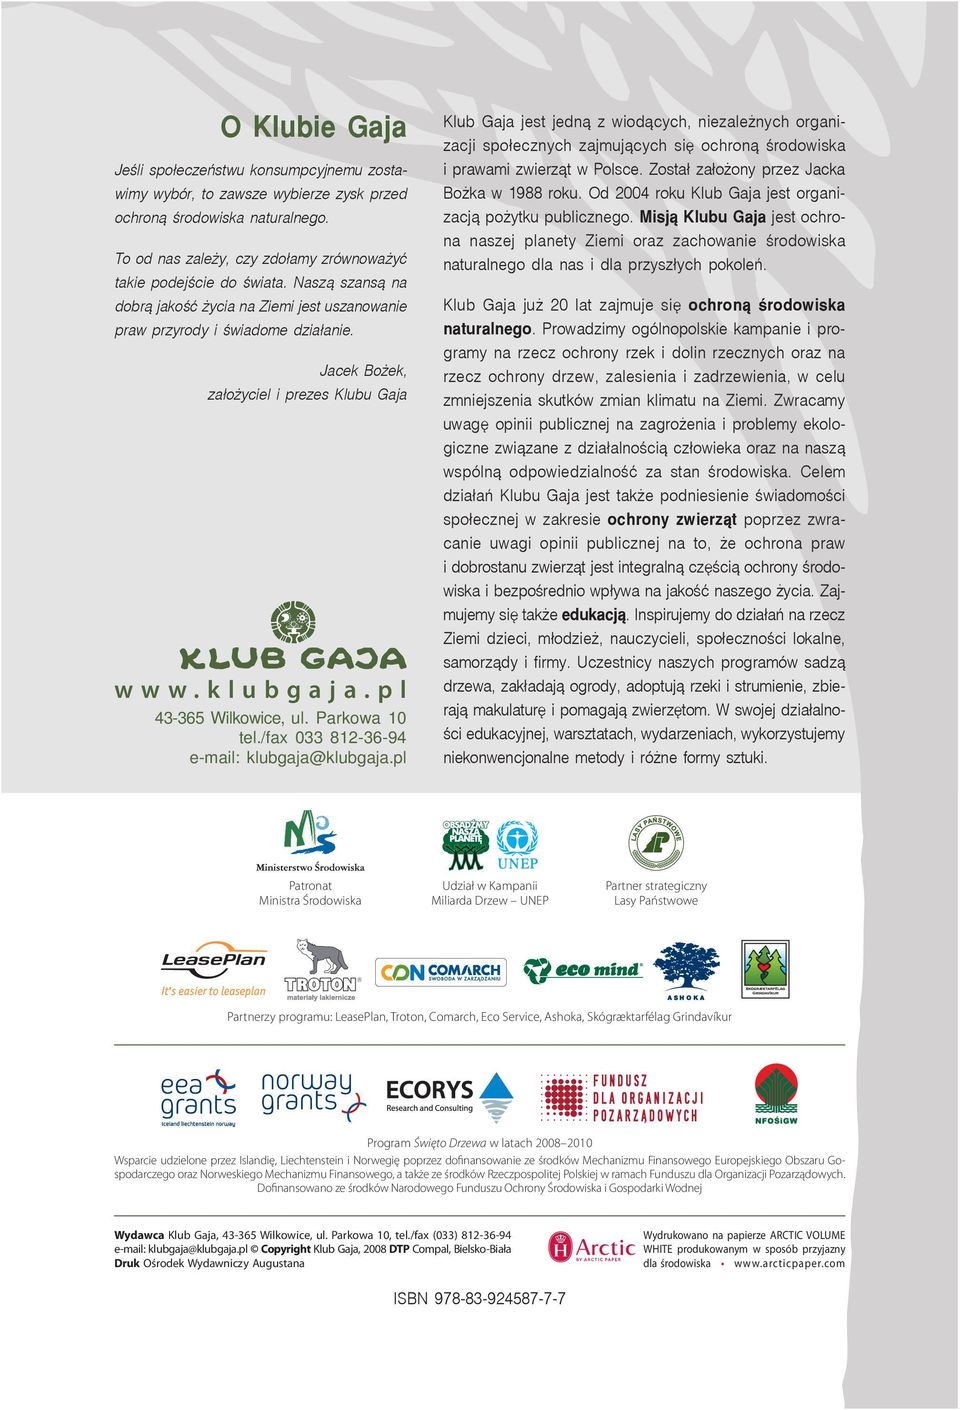 /fax 033 812-36-94 e-mail: klubgaja@klubgaja.pl Klub Gaja jest jedną z wiodących, niezależnych organizacji społecznych zajmujących się ochroną środowiska i prawami zwierząt w Polsce.